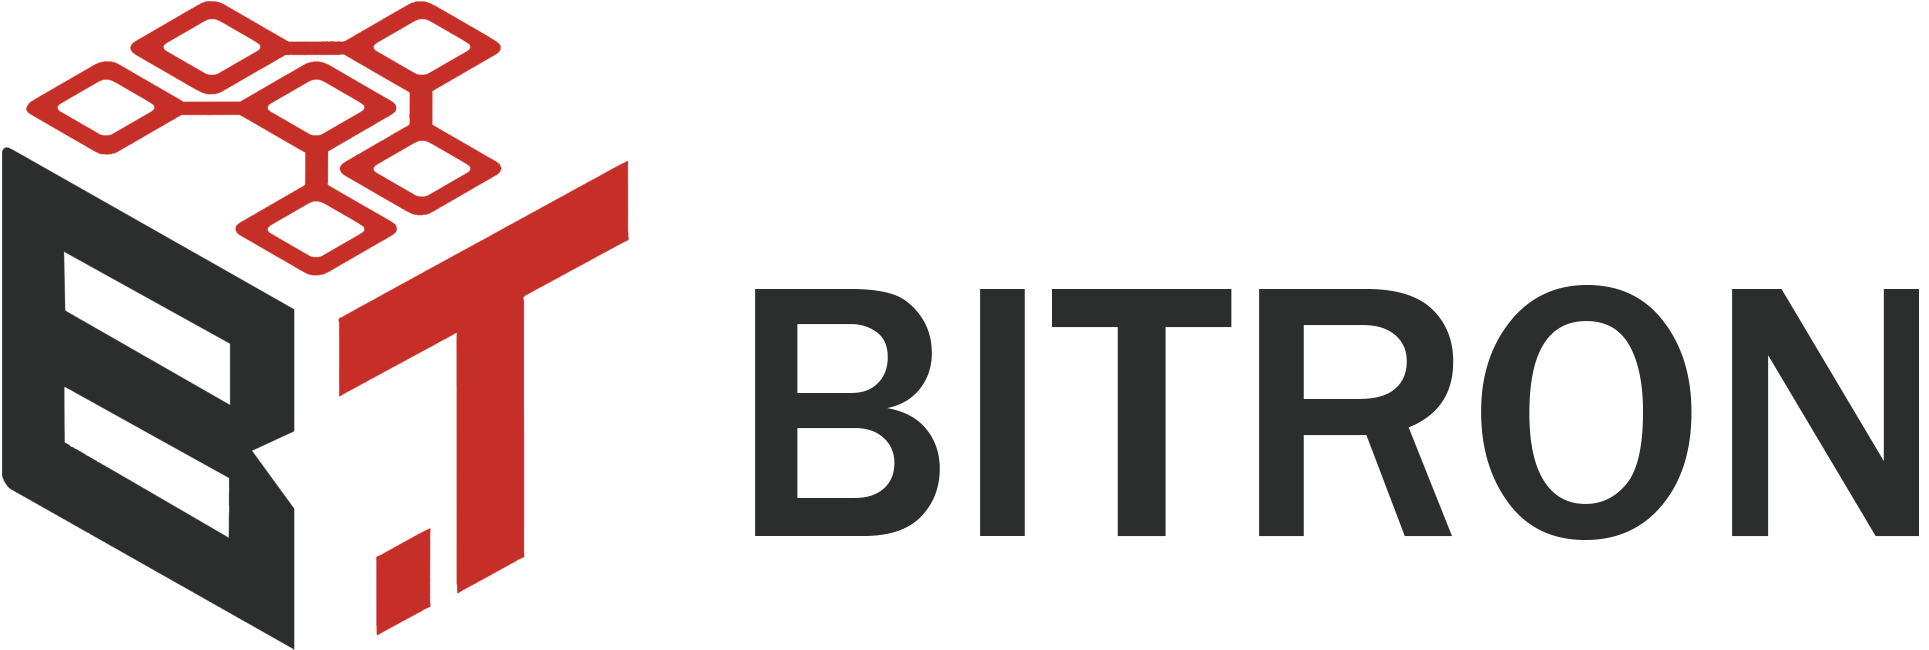 bitron | بیترون | bitronco